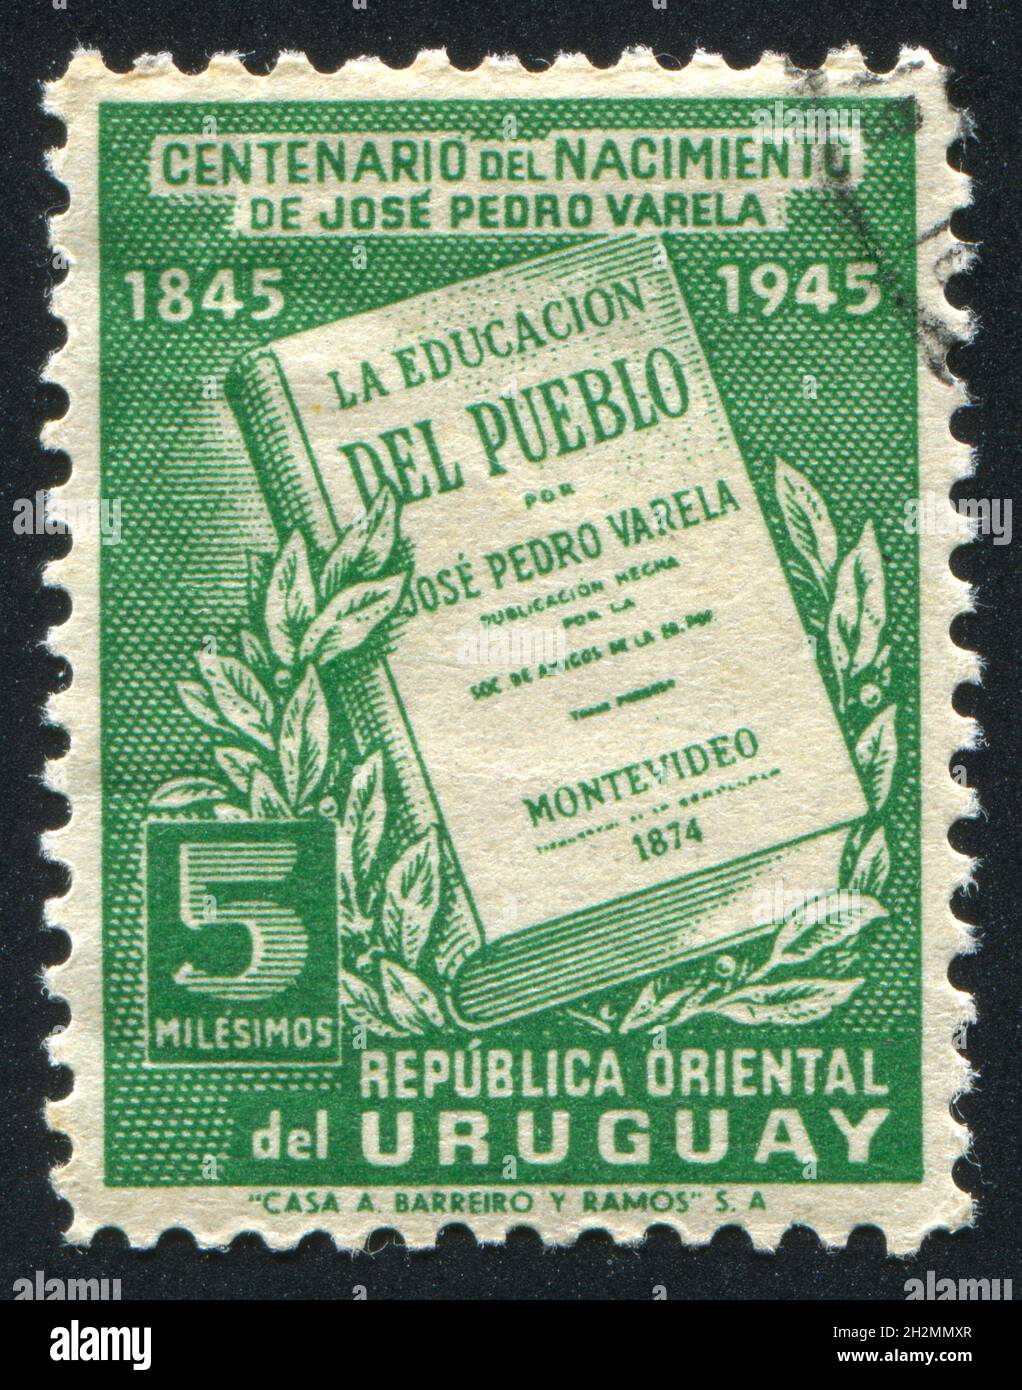 URUGUAY - CIRCA 1945: stamp printed by Uruguay, shows La Educacion del Pueblo, circa 1945 Stock Photo